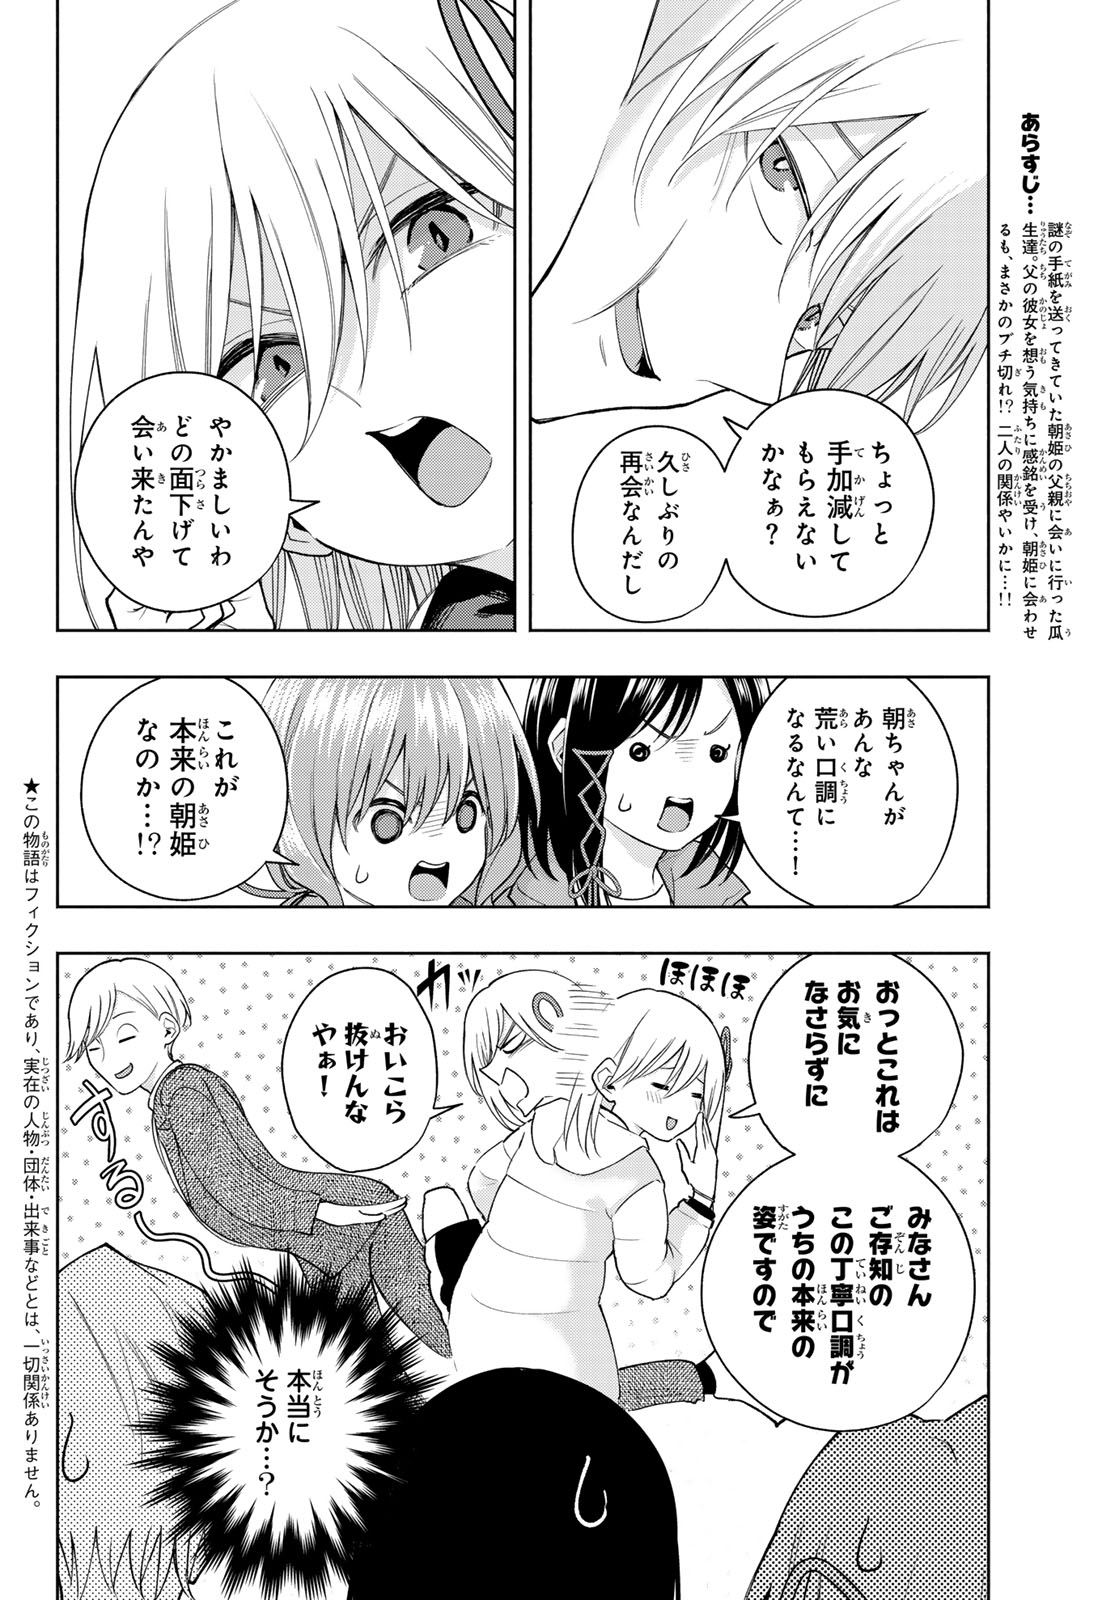 Amagami-san Chi no Enmusubi - Chapter 128 - Page 2